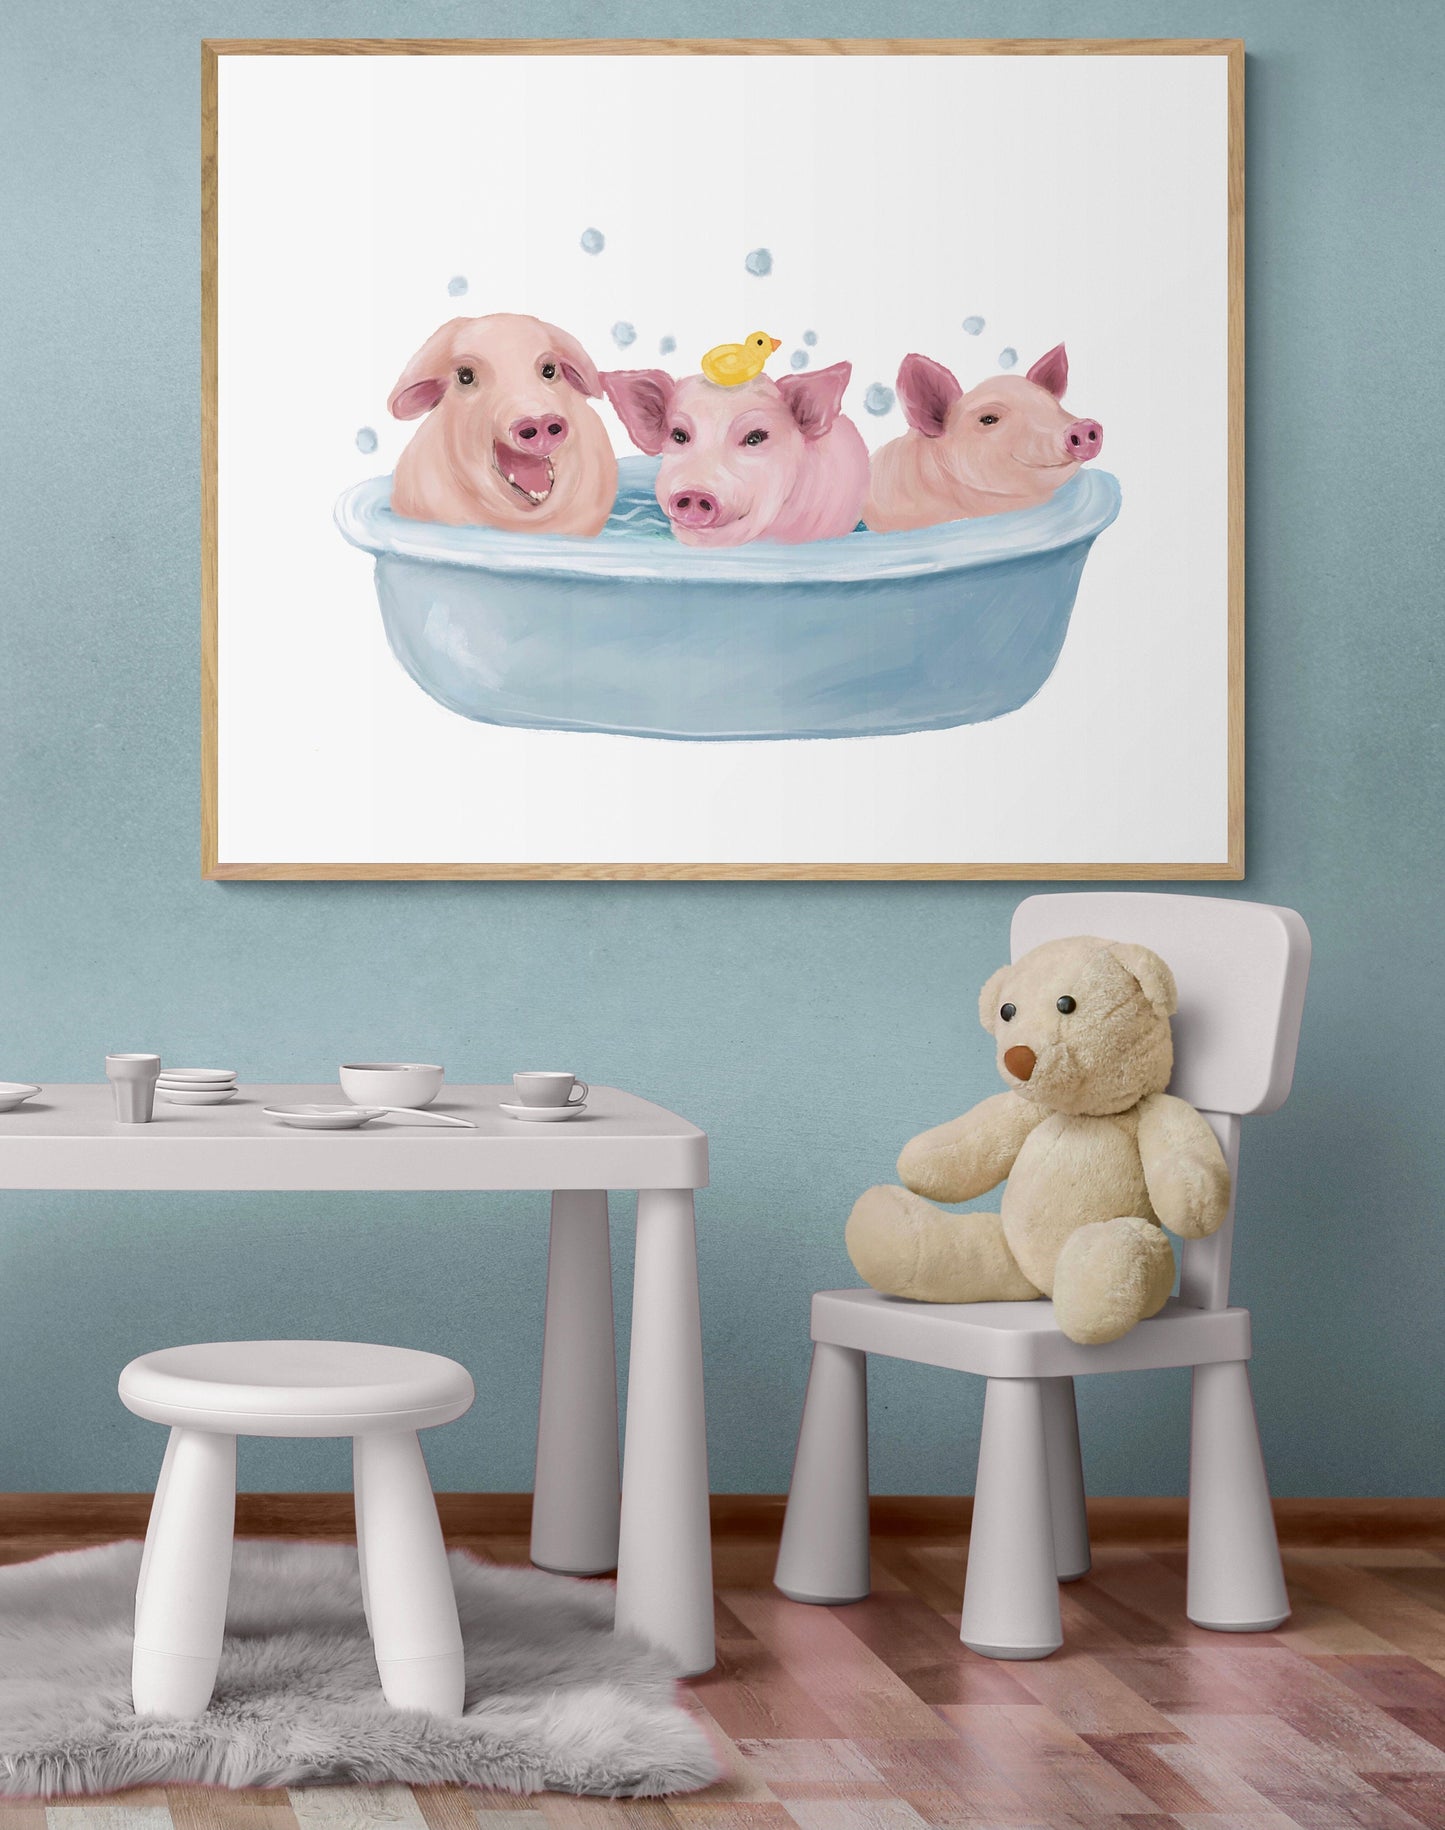 Happy Pigs Taking a Bath, Funny Bathroom Wall Art, Farm Animals in Tub, Piglets Bubble Bathing, Nursery Decor, Kids Wall Art